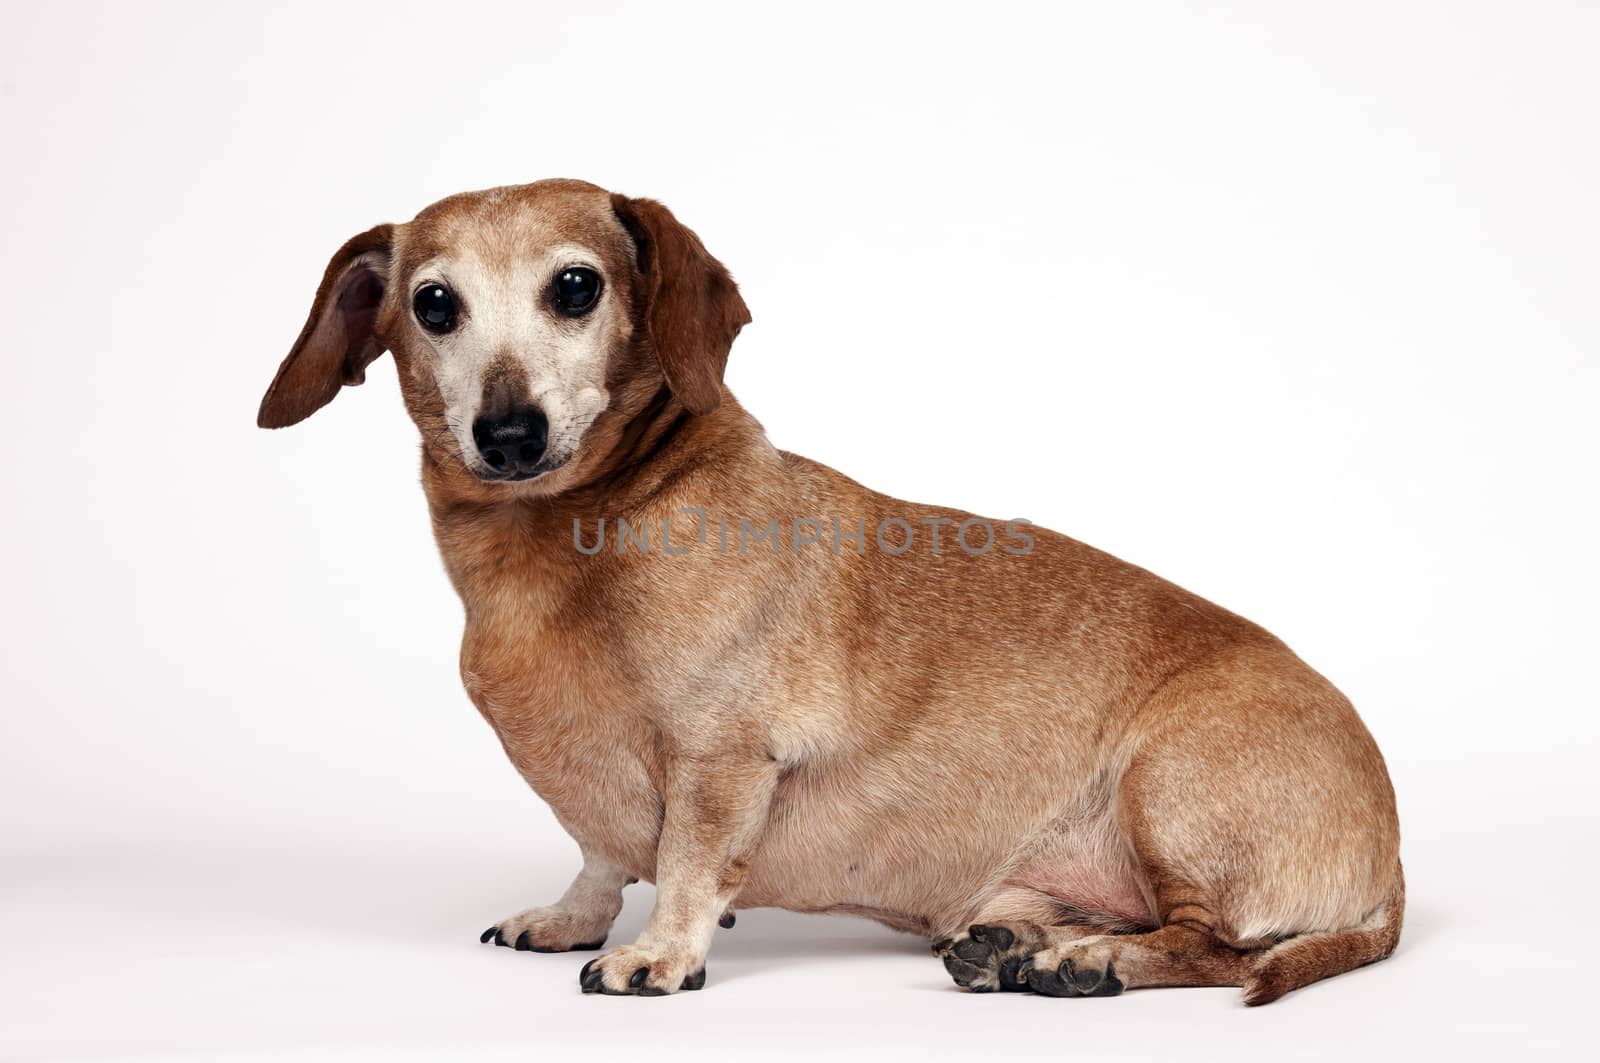 Older Dachshund Dog Posing by stockbuster1